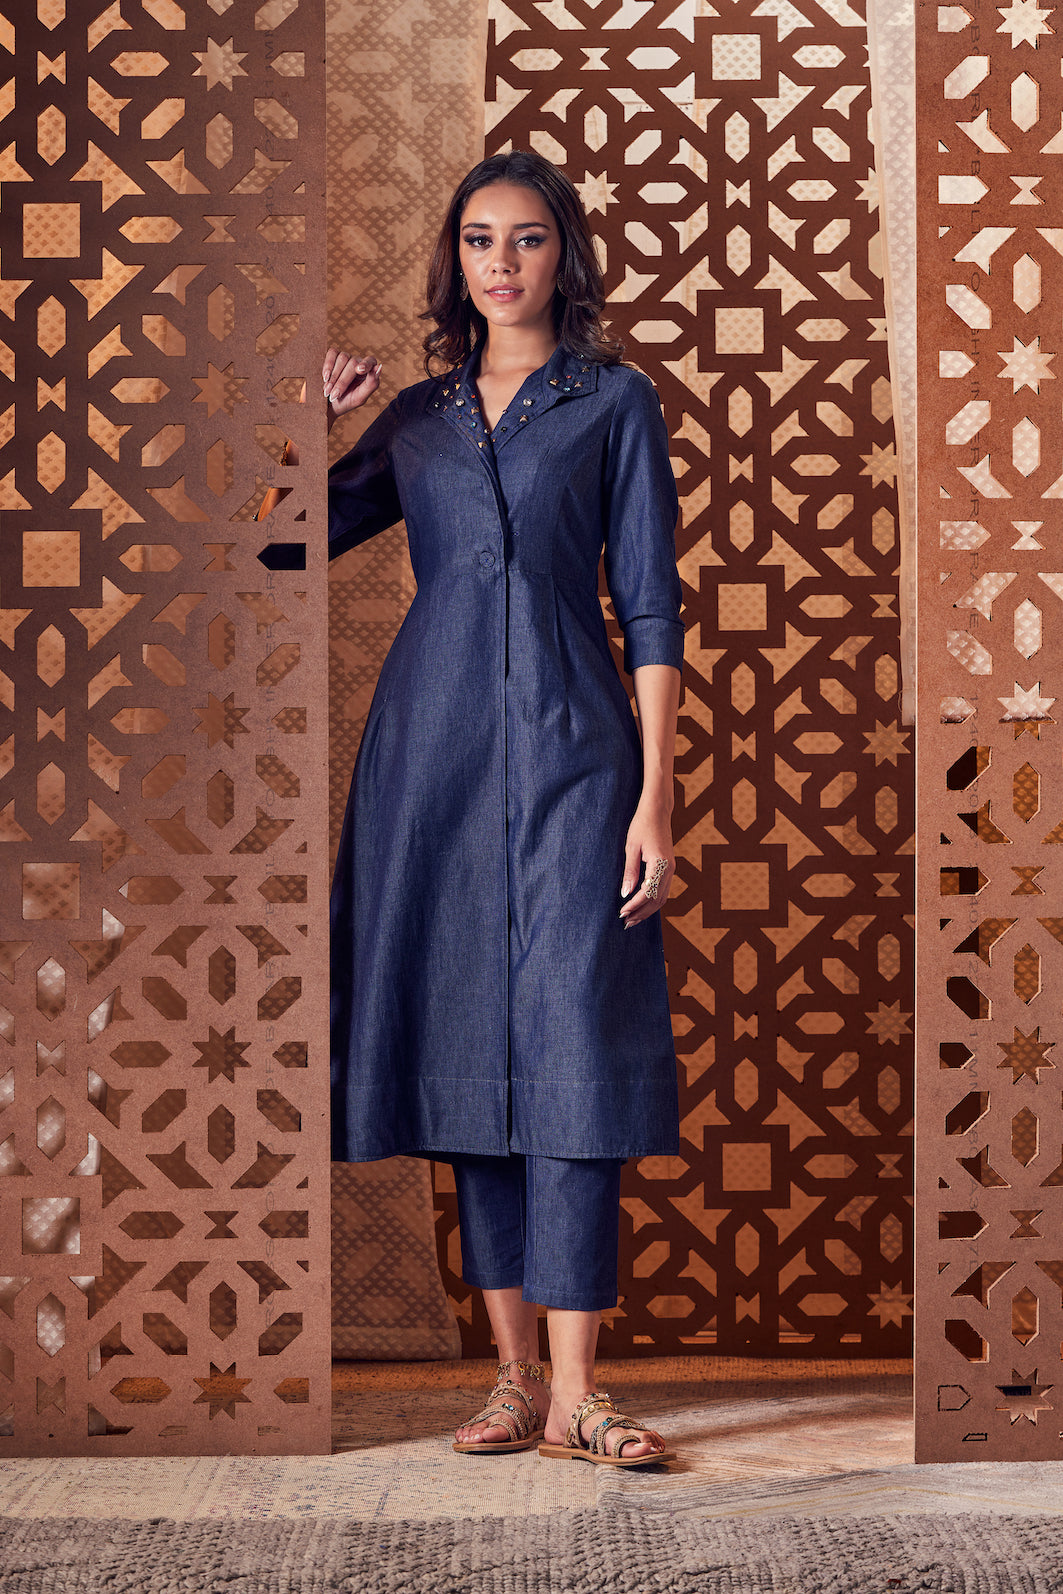 Blue Printed Wrap/Jacket Style Kurti & Pant Set. – Monisha Jaising